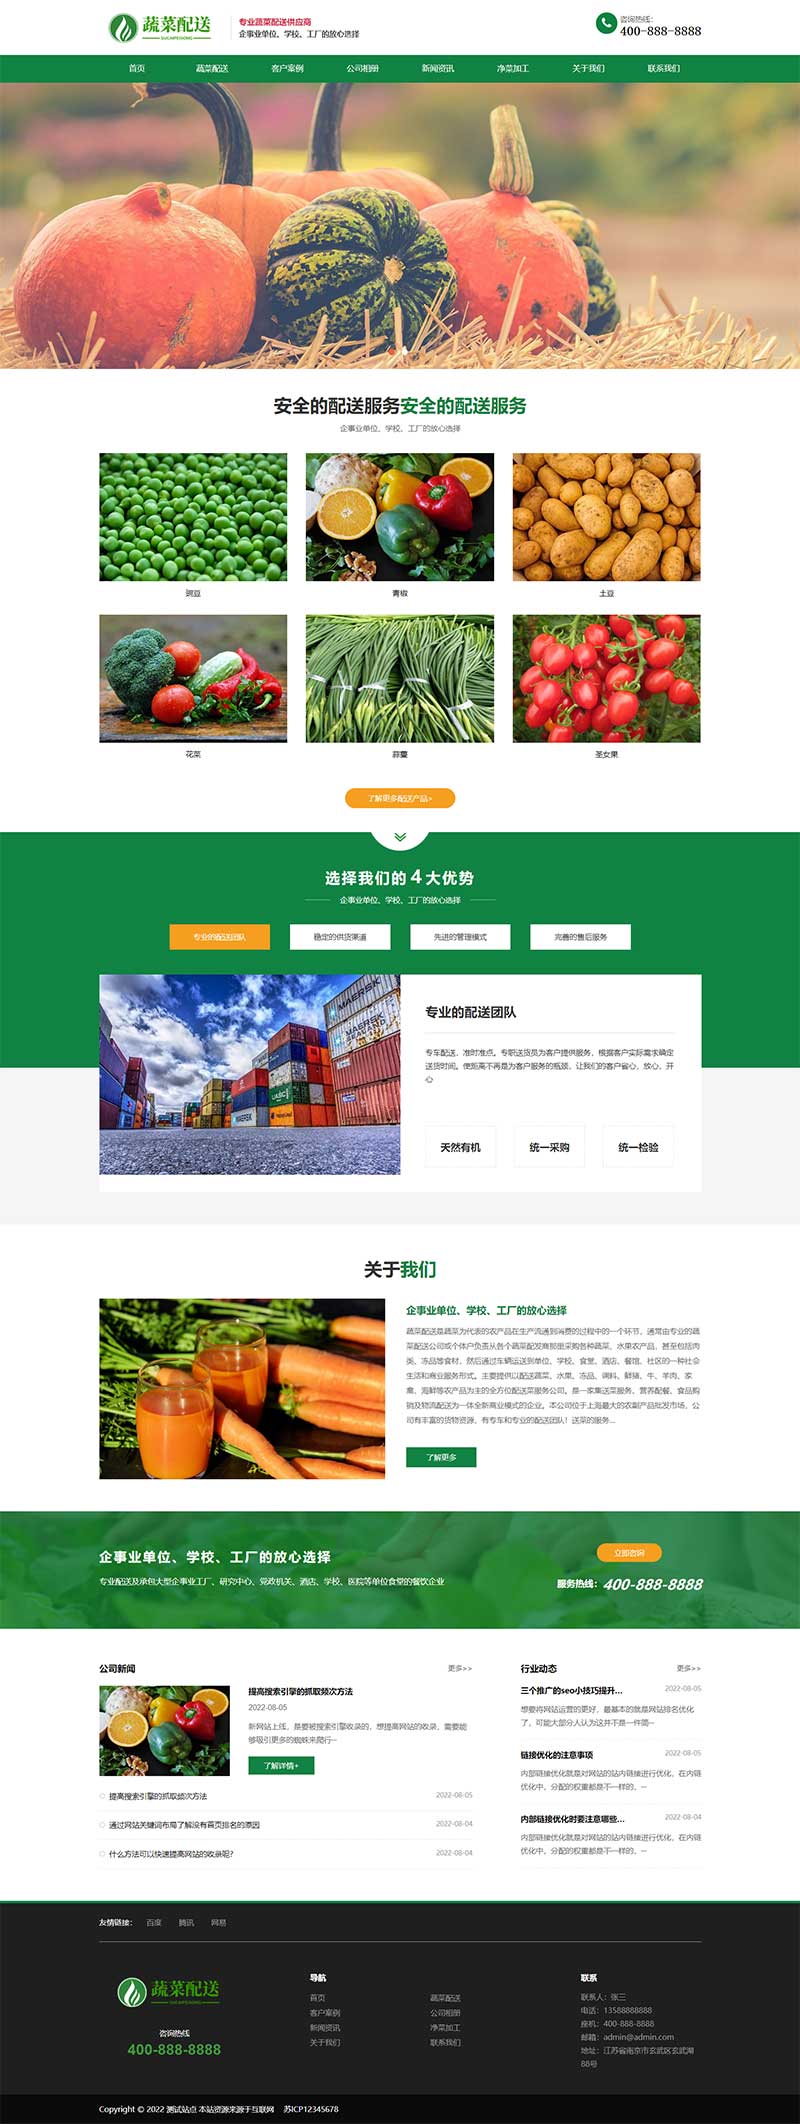 响应式蔬菜配送果蔬配送网站Wordpress模板效果图